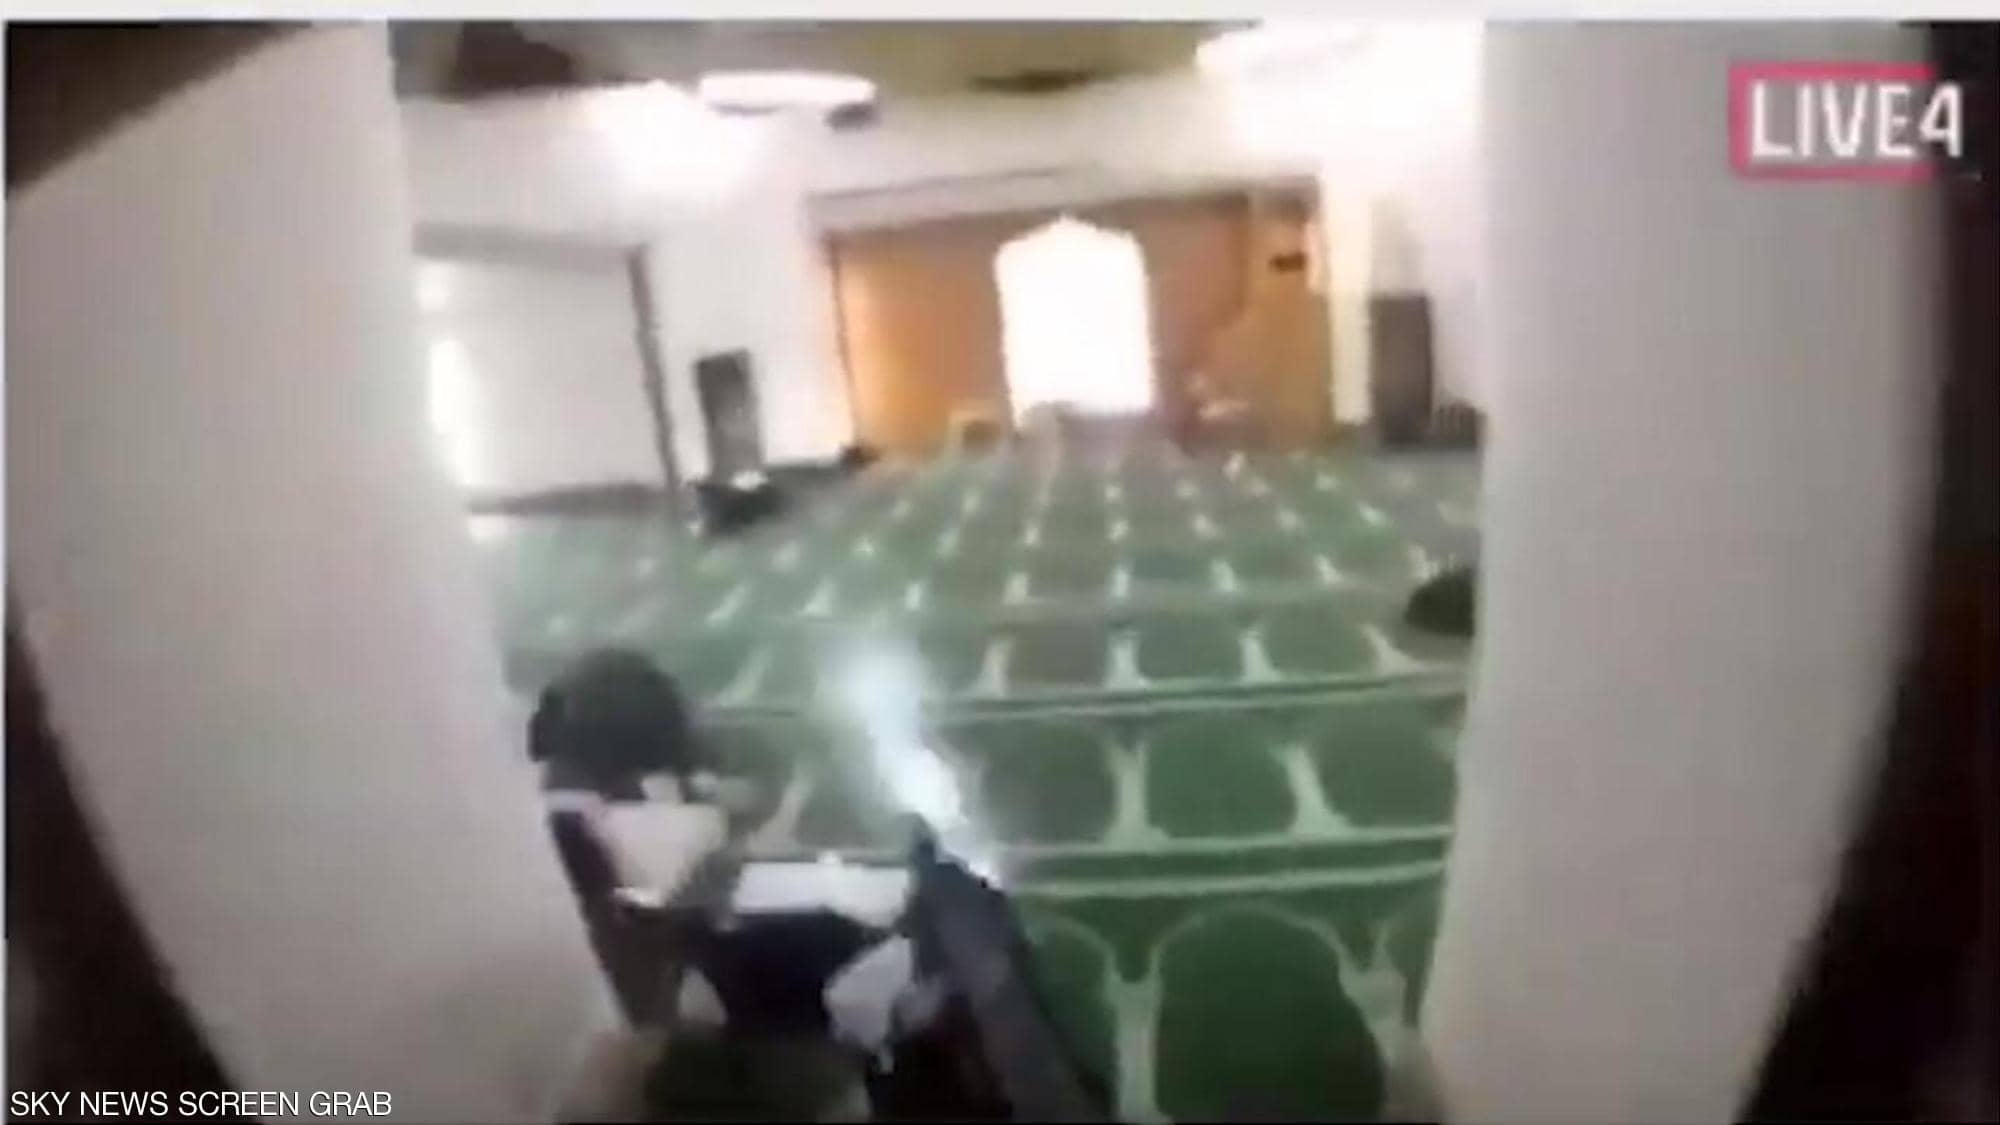 فيسبوك تحذف 1.5 مليون فيديو لهجوم المسجدين